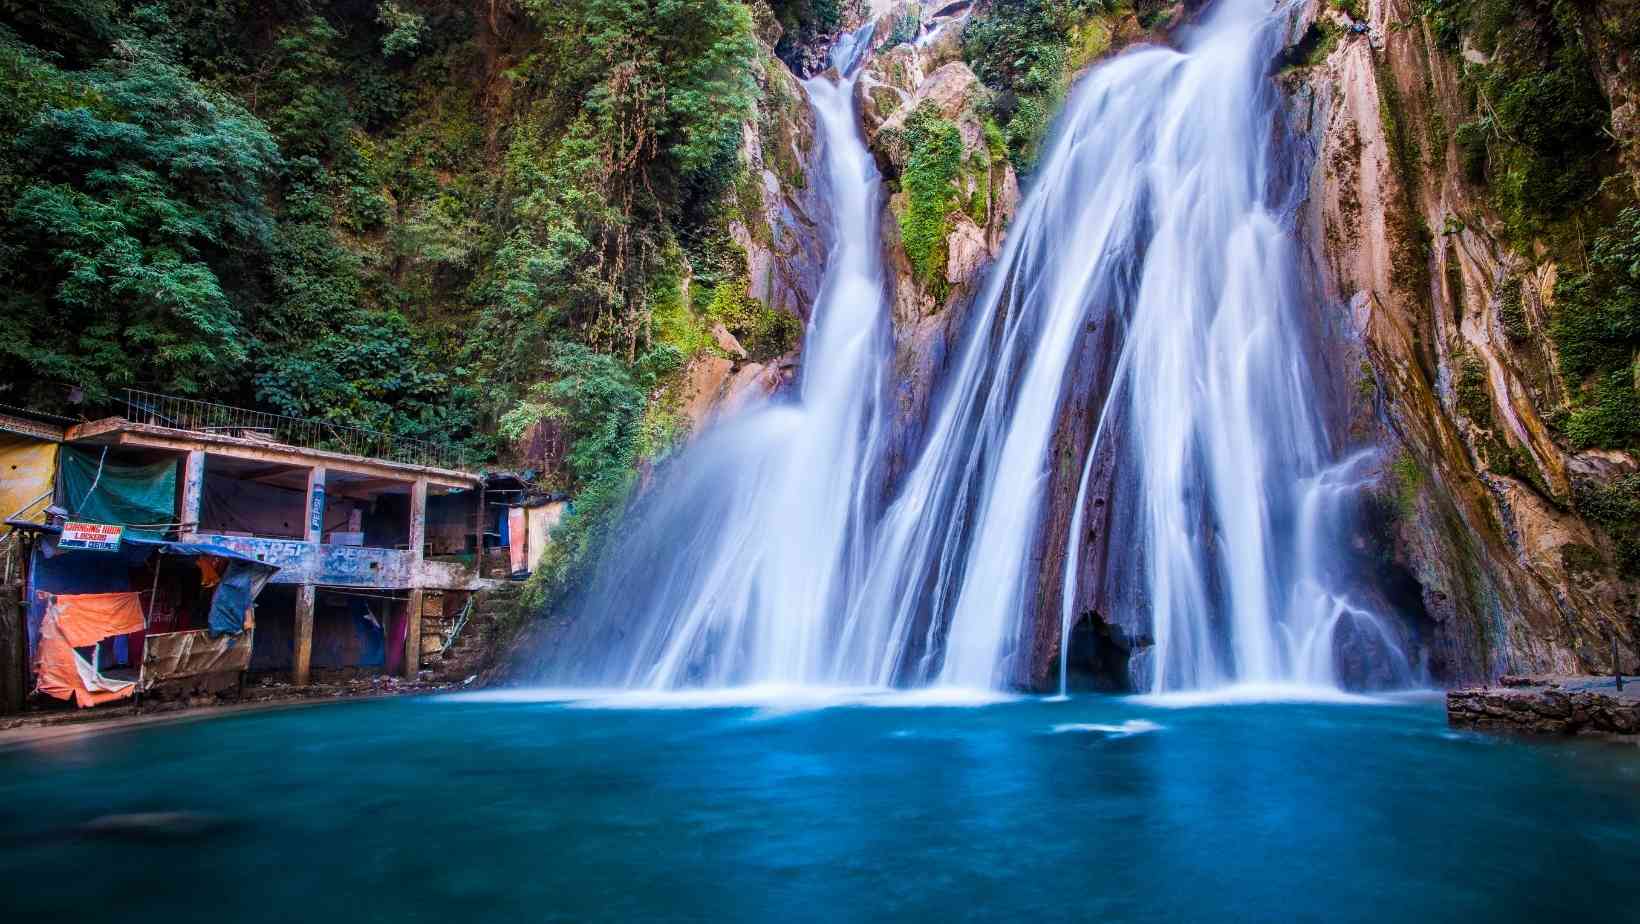 Kempty falls - Best Waterfalls In Uttarakhand